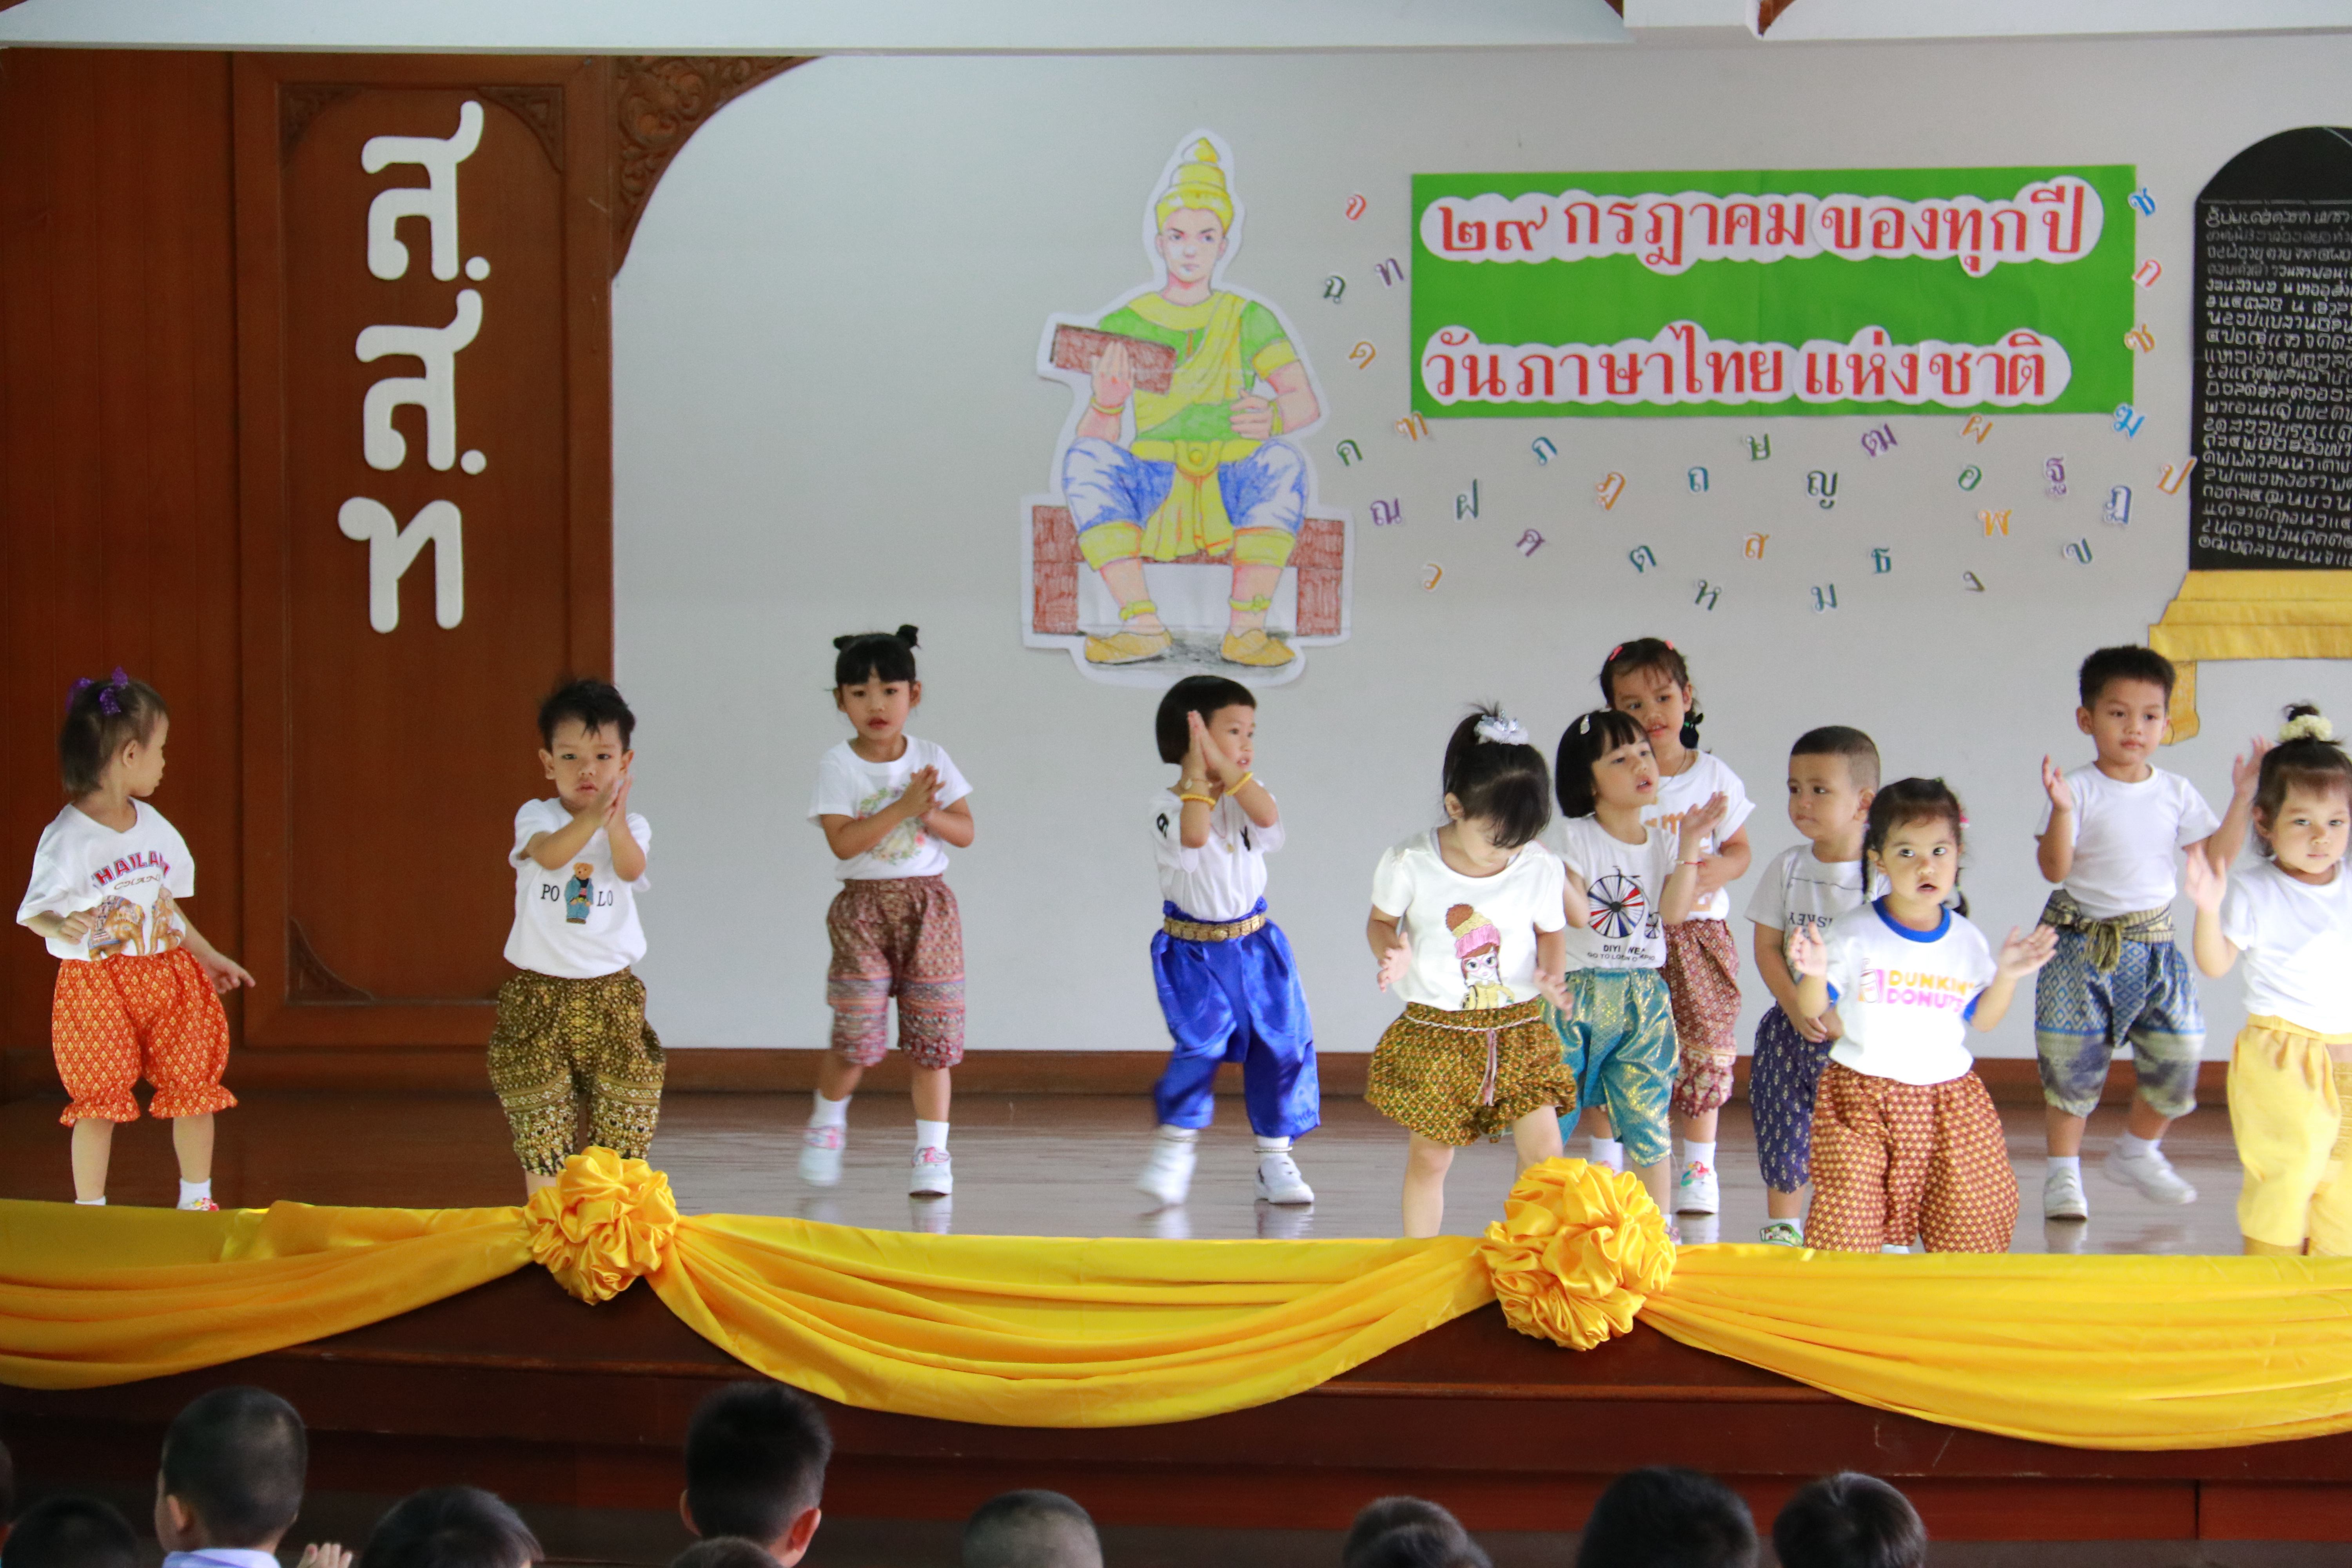 ประวัติโรงเรียนสมาคมสตรีไทย